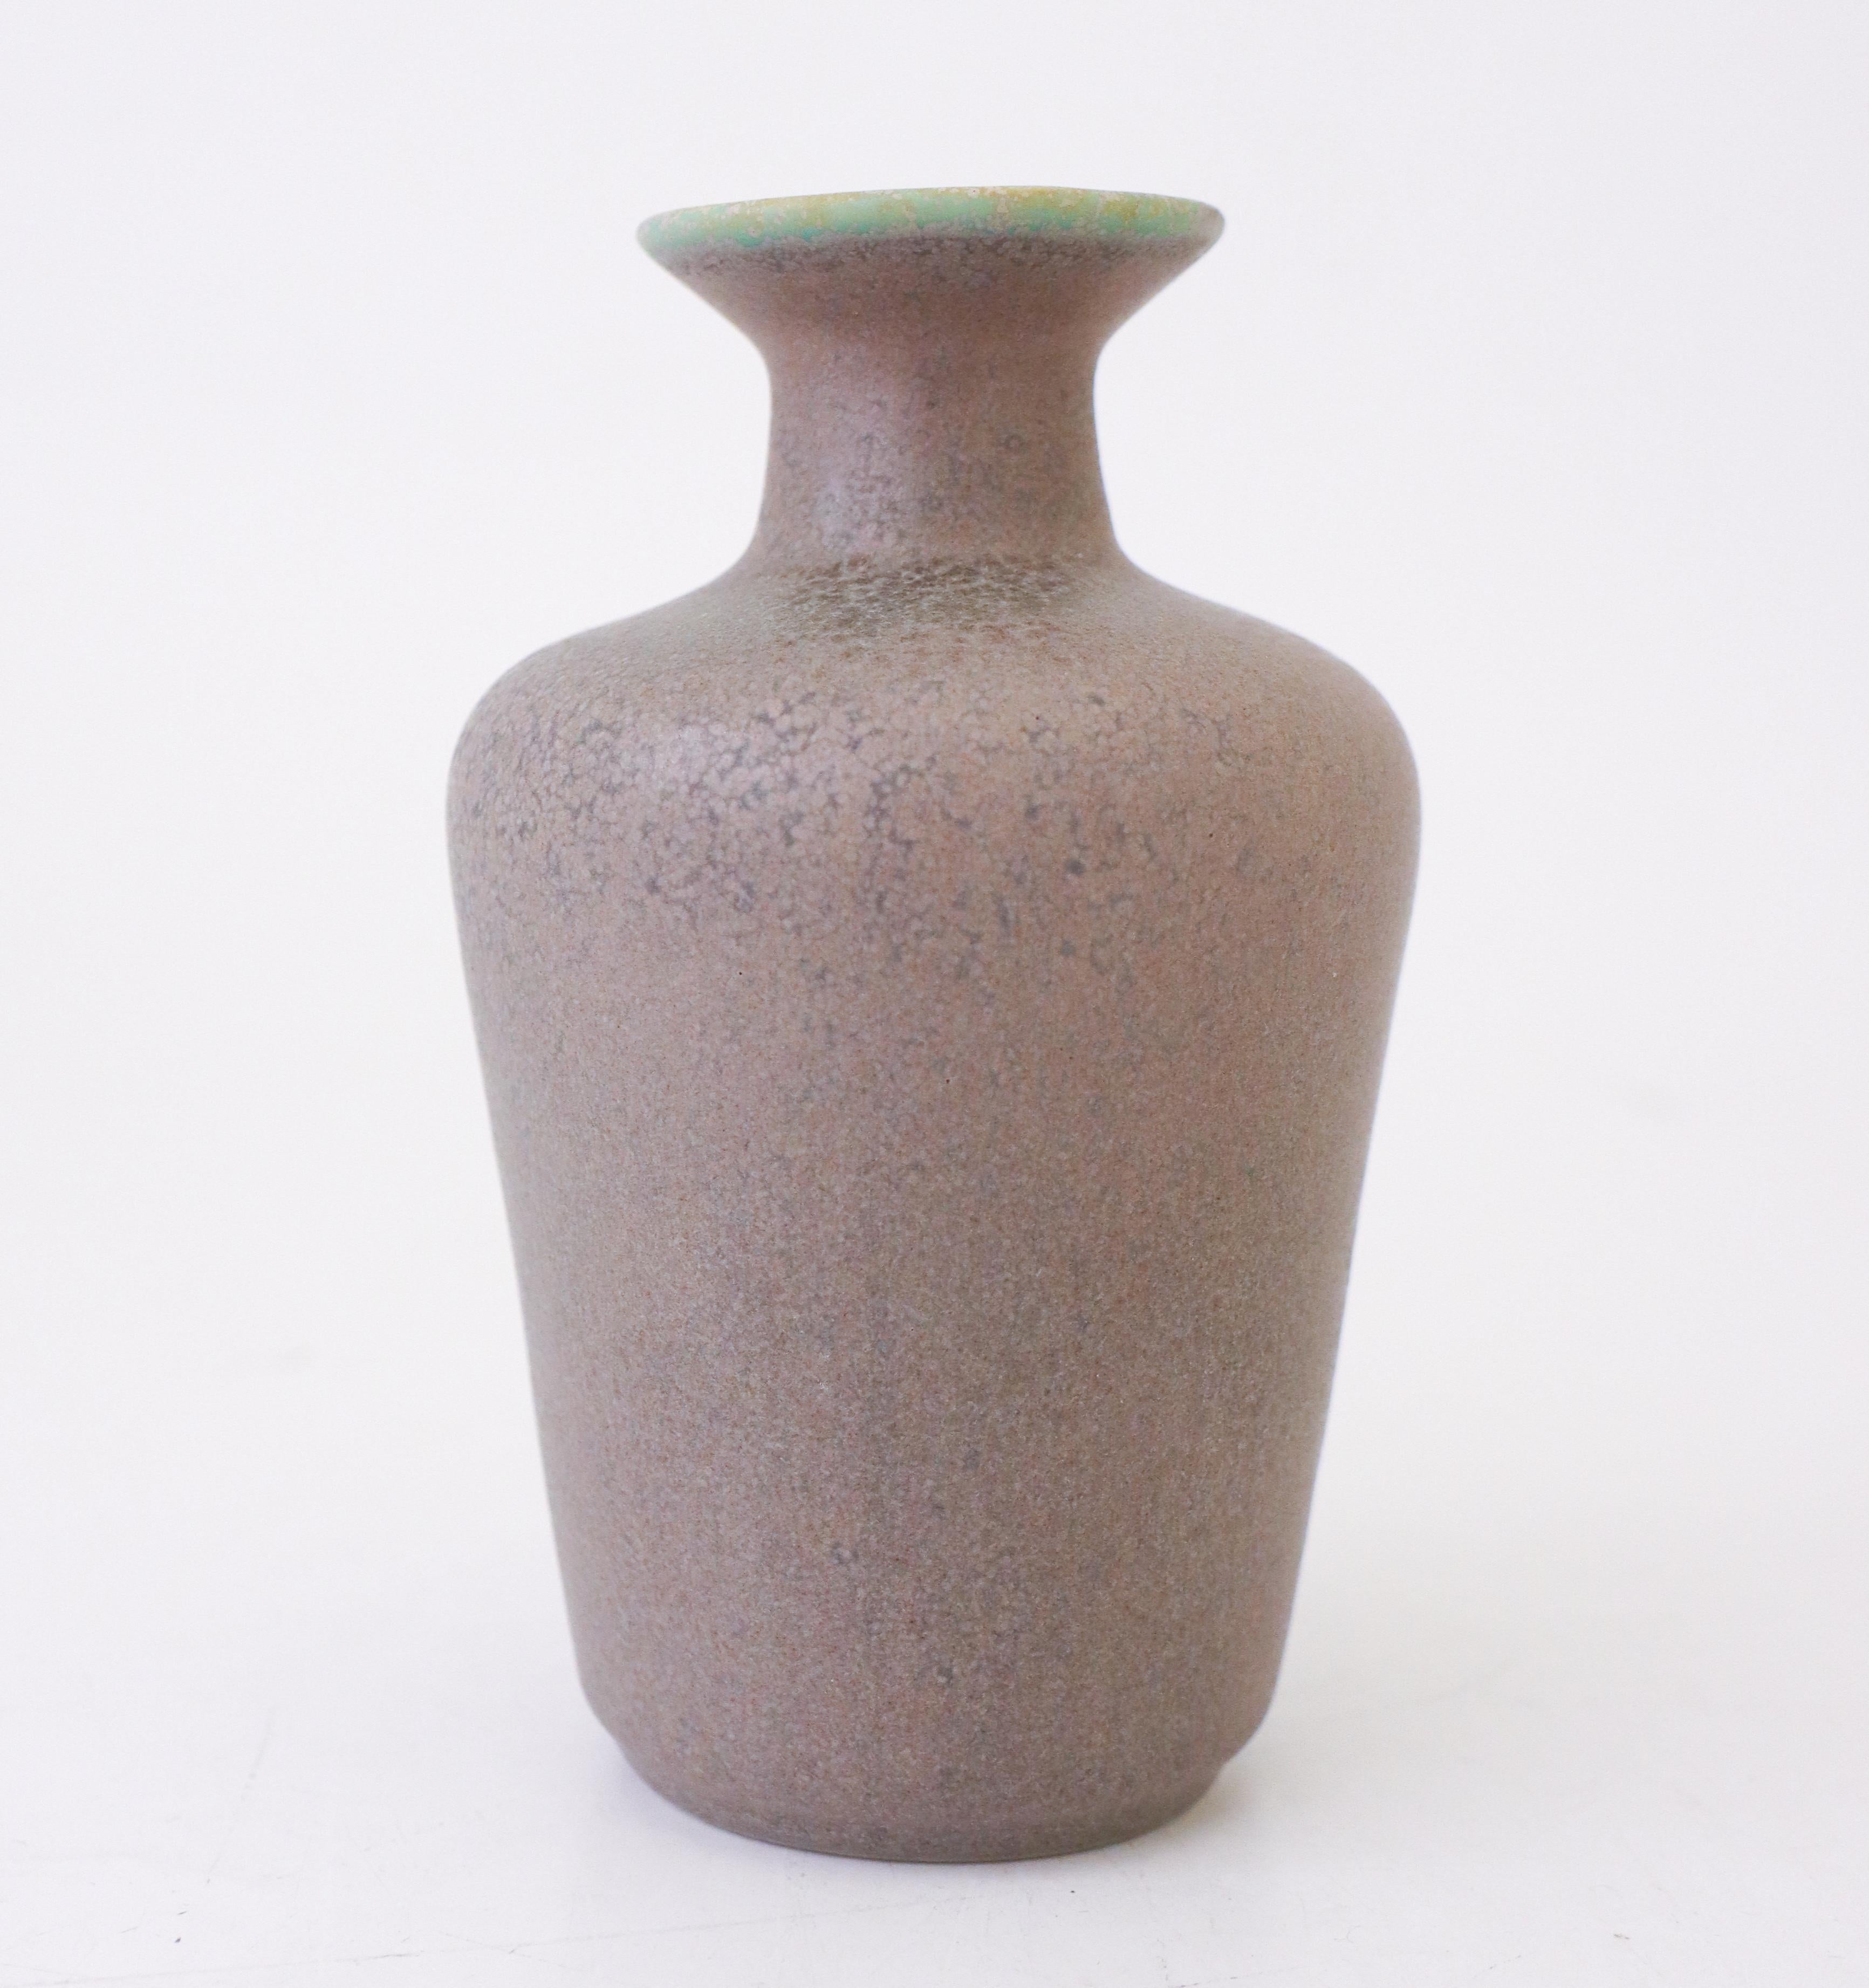 Eine Vase mit einer schönen hellvioletten Glasur, entworfen von Gunnar Nylund bei Rörstrand von Modell Granola, die Vase ist 14 cm hoch und hat einen Durchmesser von 9 cm. Es ist in neuwertigem Zustand und als 1. Qualität gekennzeichnet. 

Gunnar